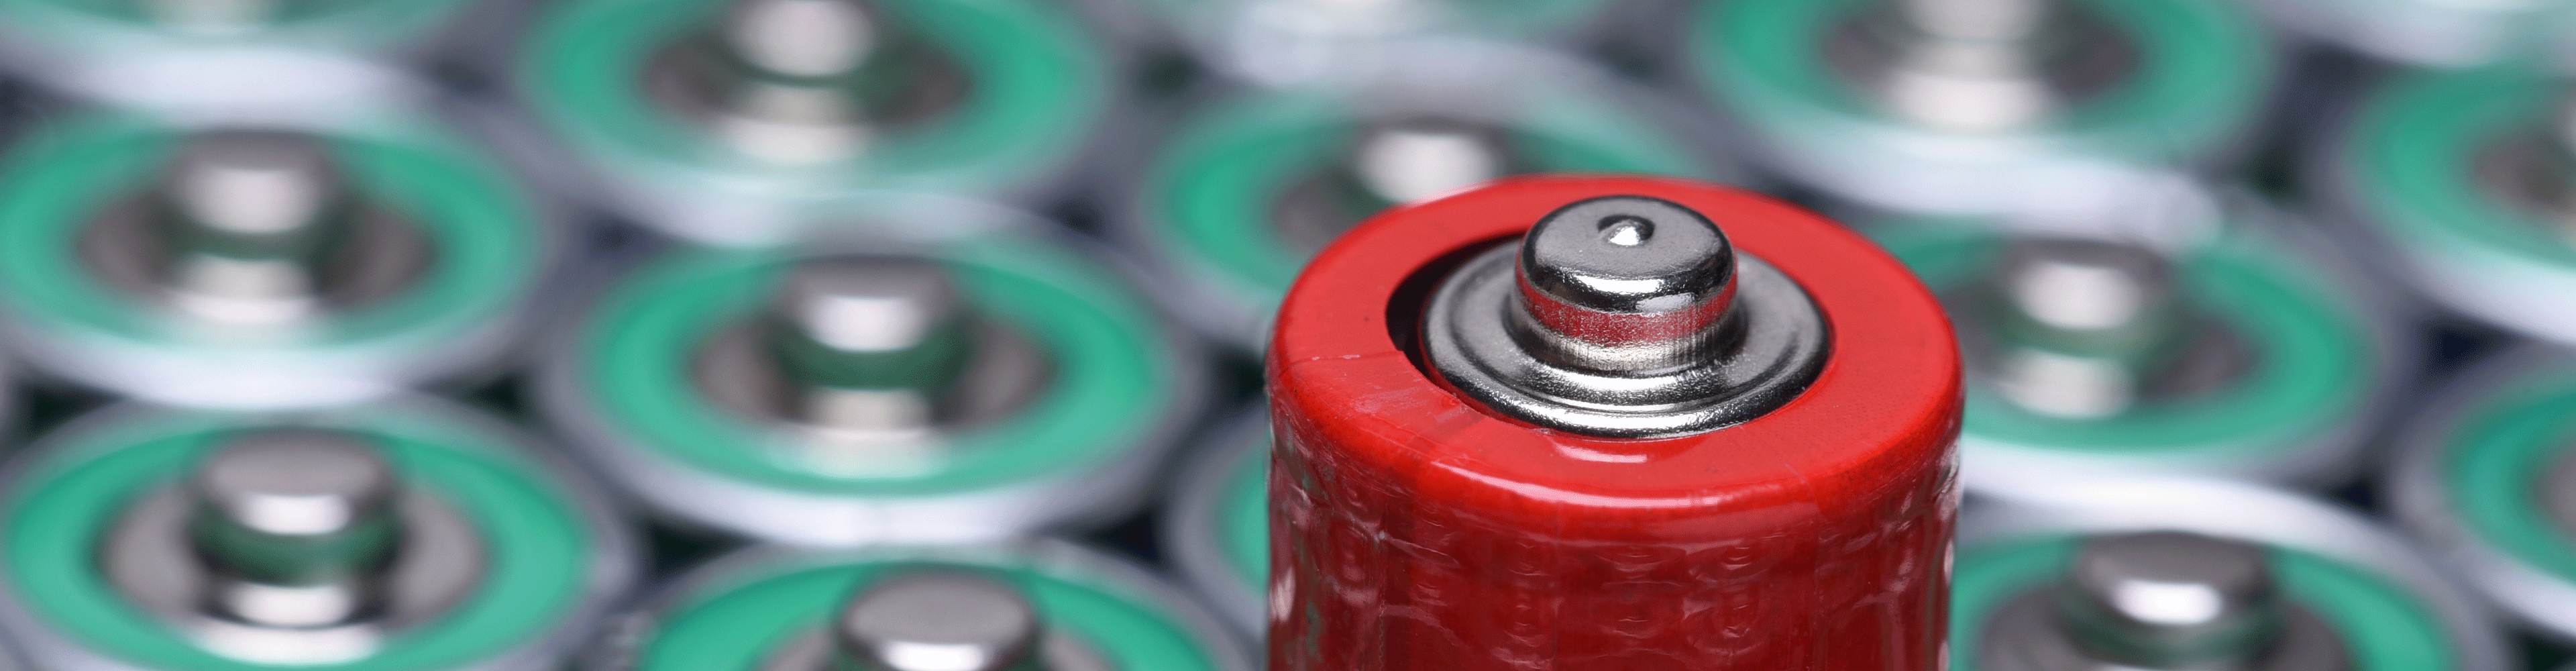 Ein Meer an Batterien: Unsere heute verwendeten Batterien basieren auf dem Prinzip von Voltas Erfindung. (© Flegere/Shutterstock)